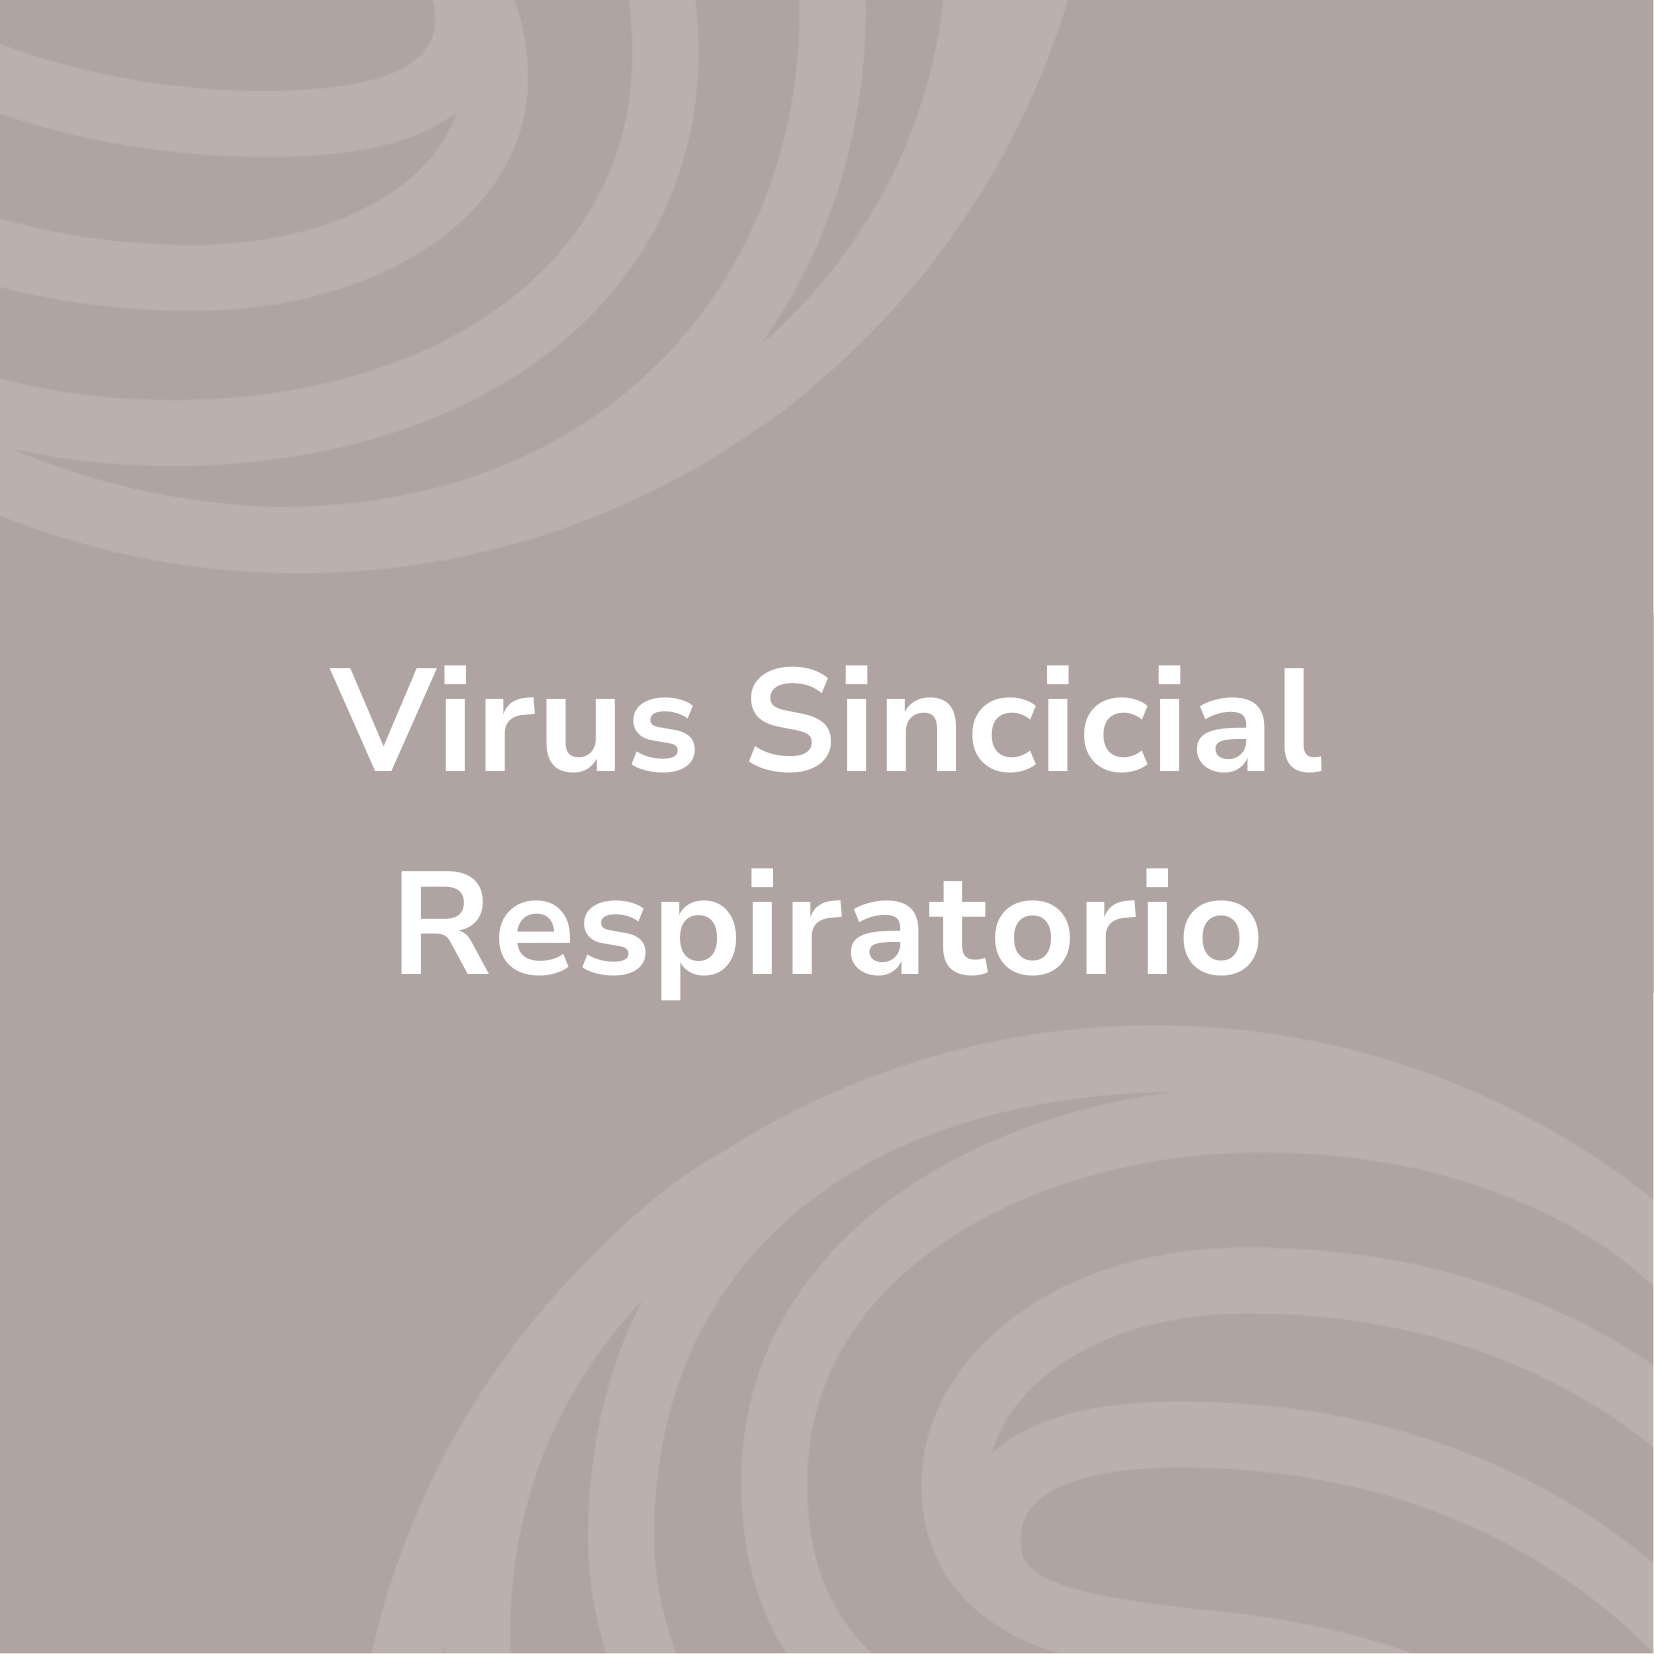 Virus Sincicial Respiratorio